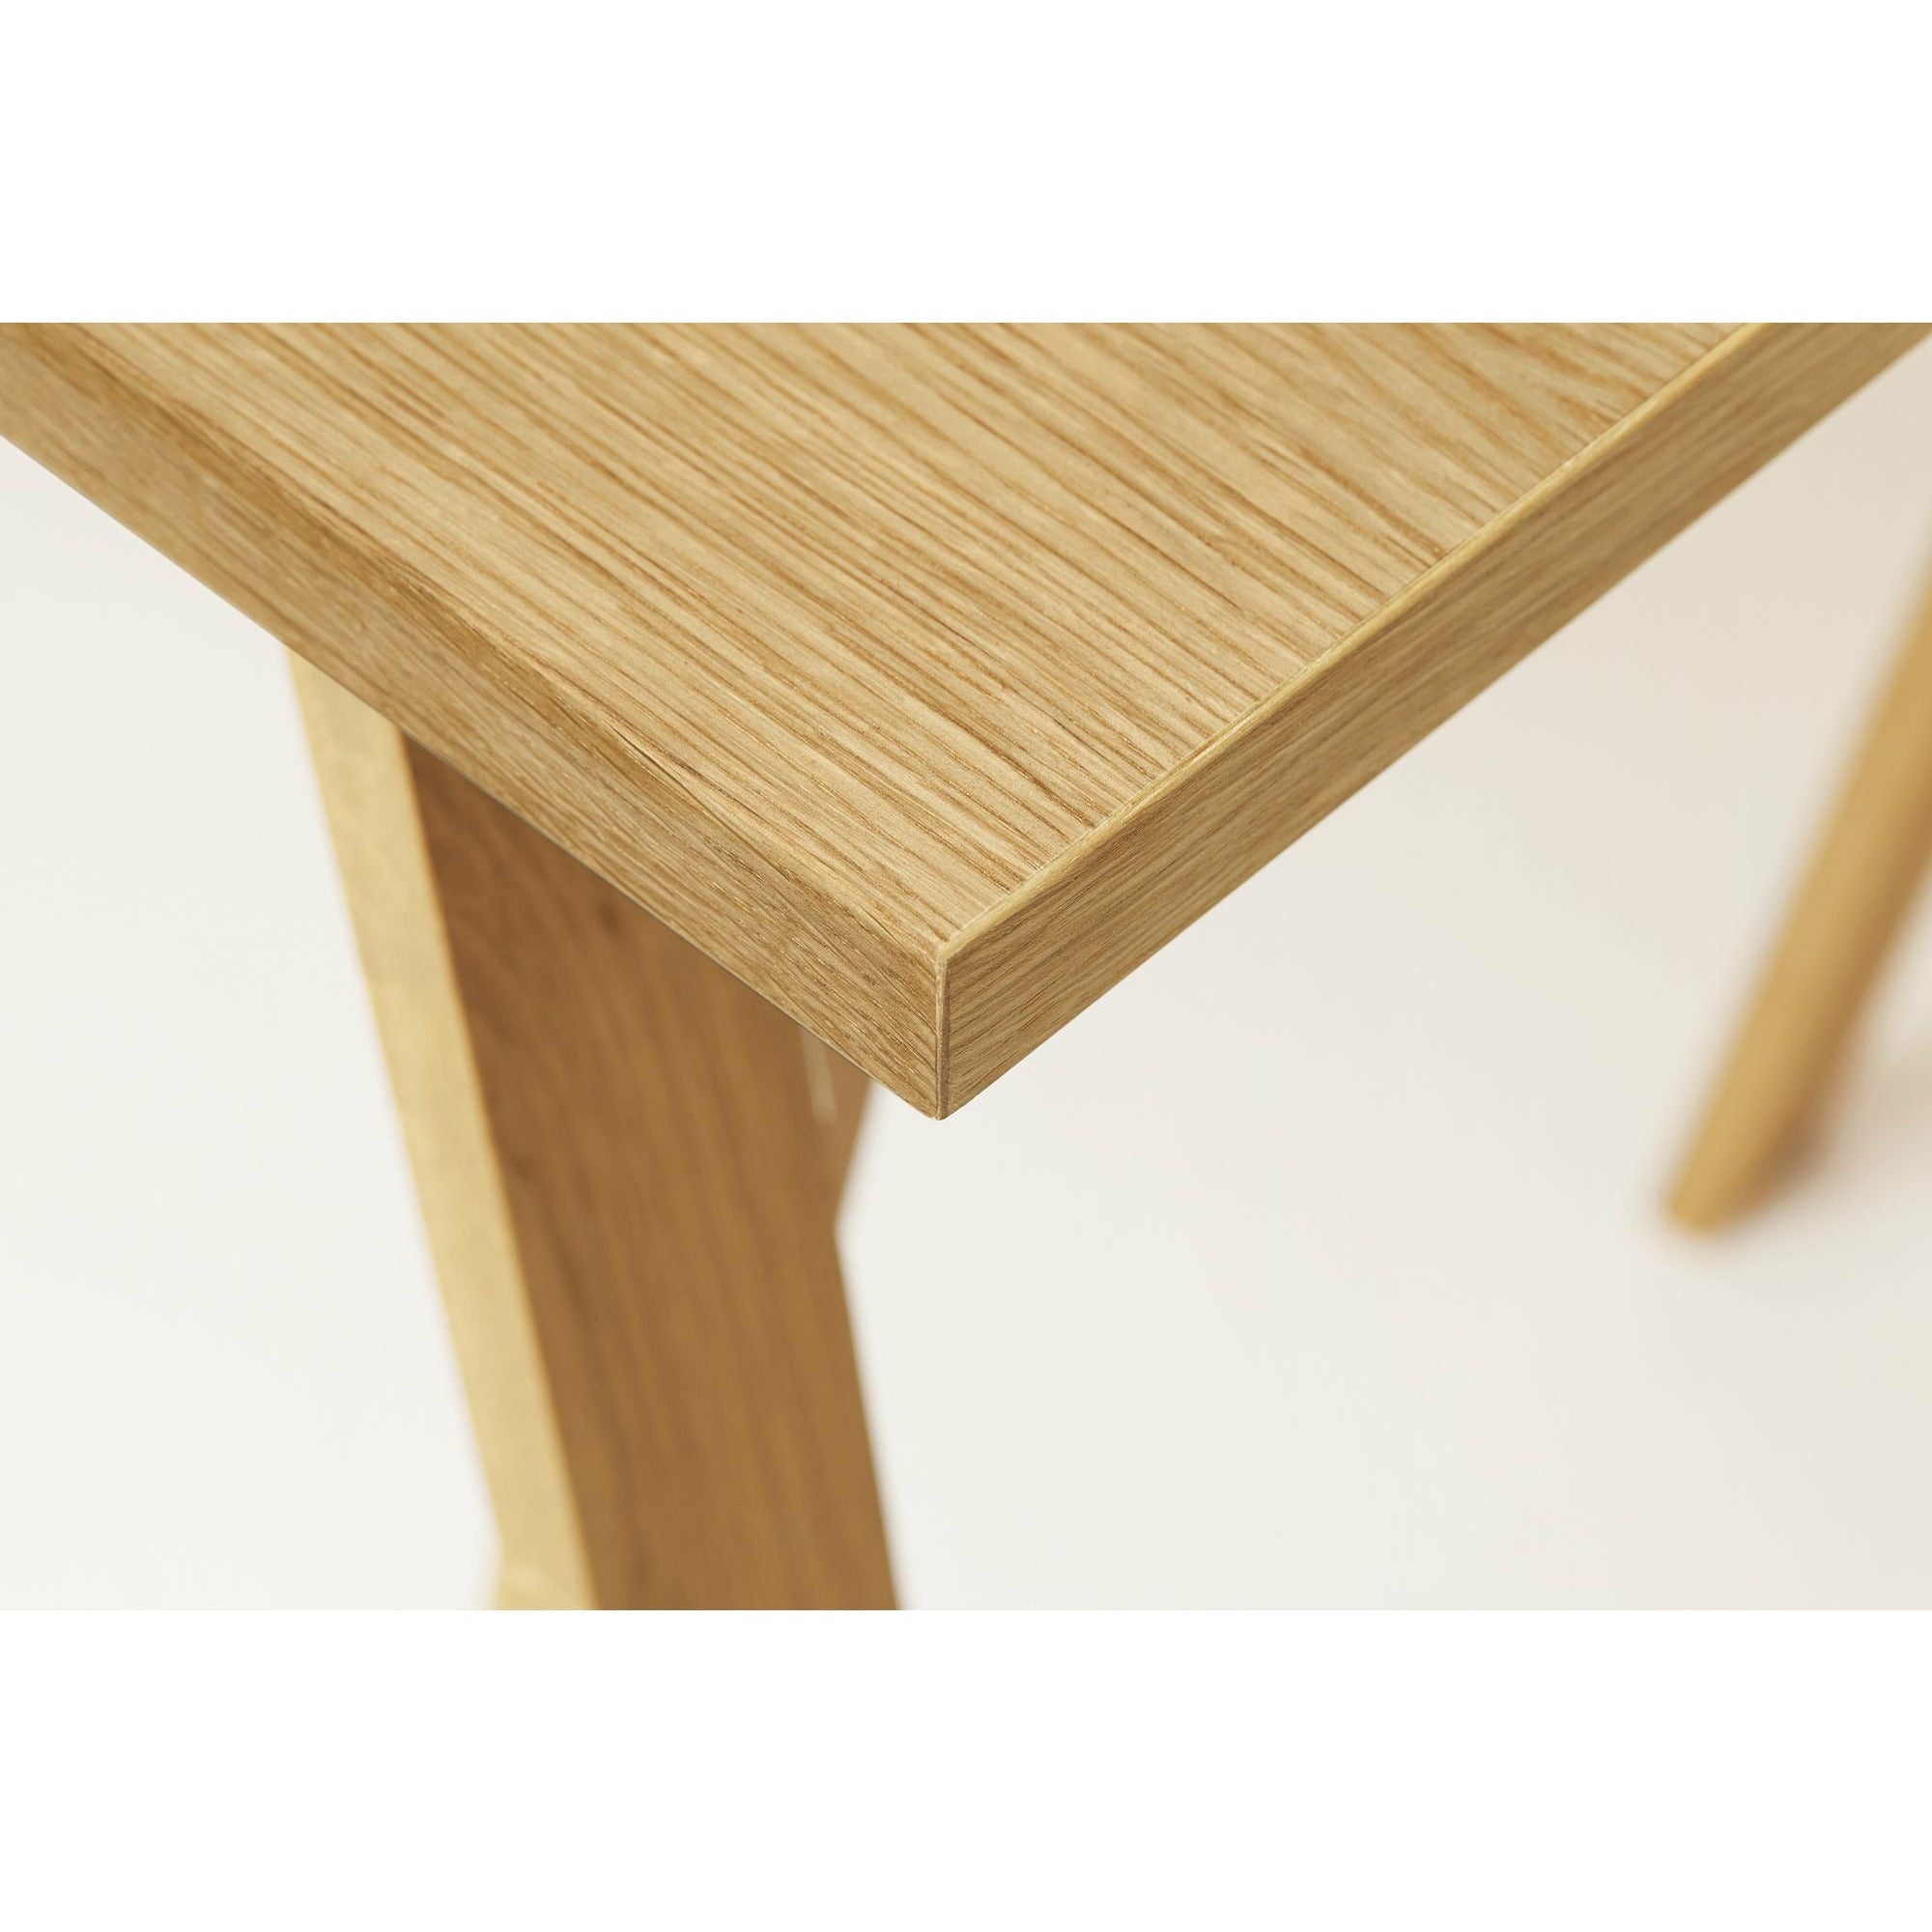 Form & Refine Linear Tabletop 125x68 Cm. Oak